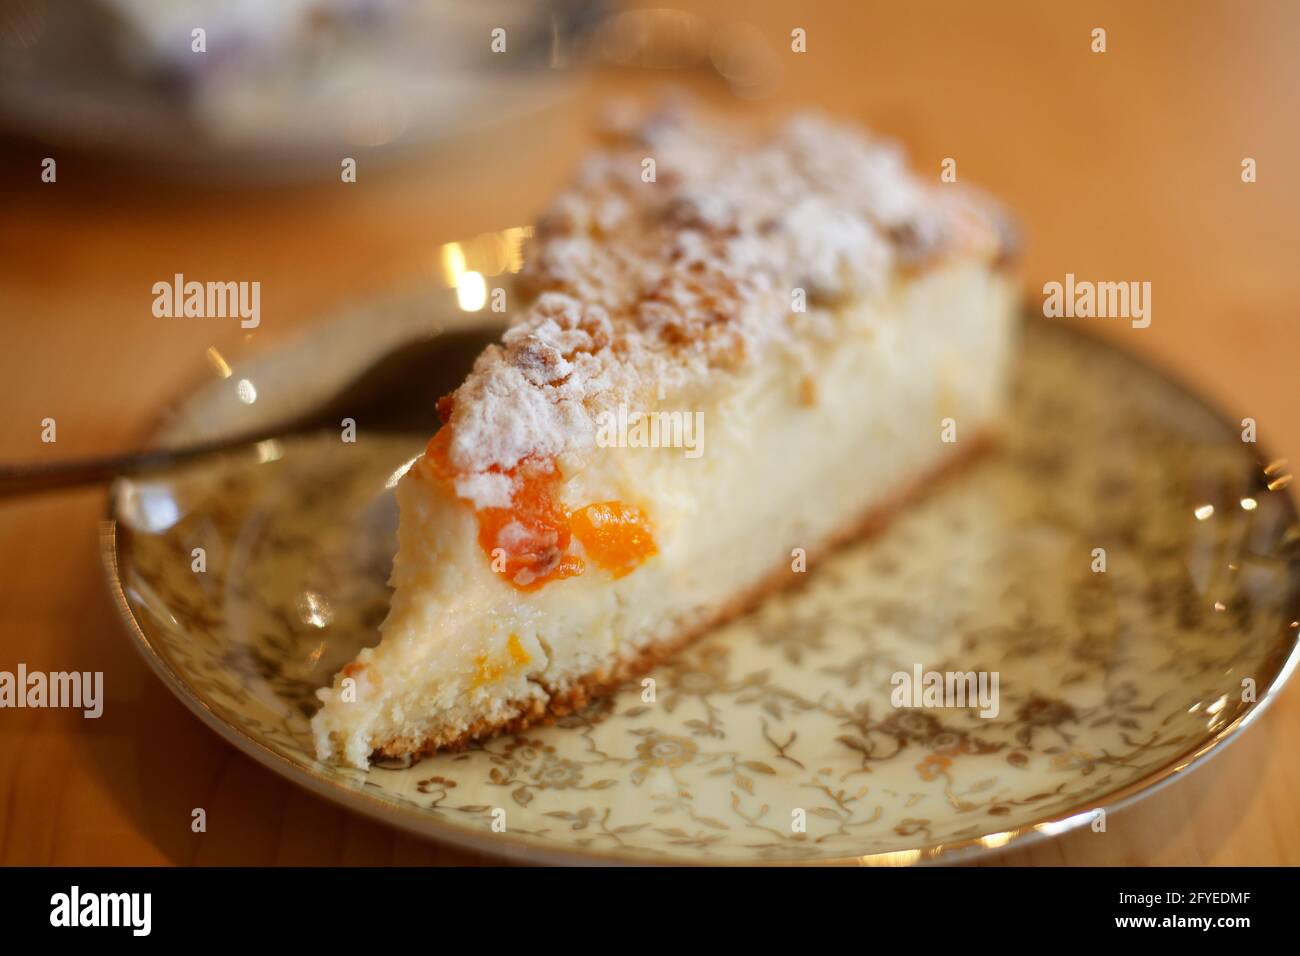 Stück Torte auf einem Teller, Deutschland, Europa Stock Photo